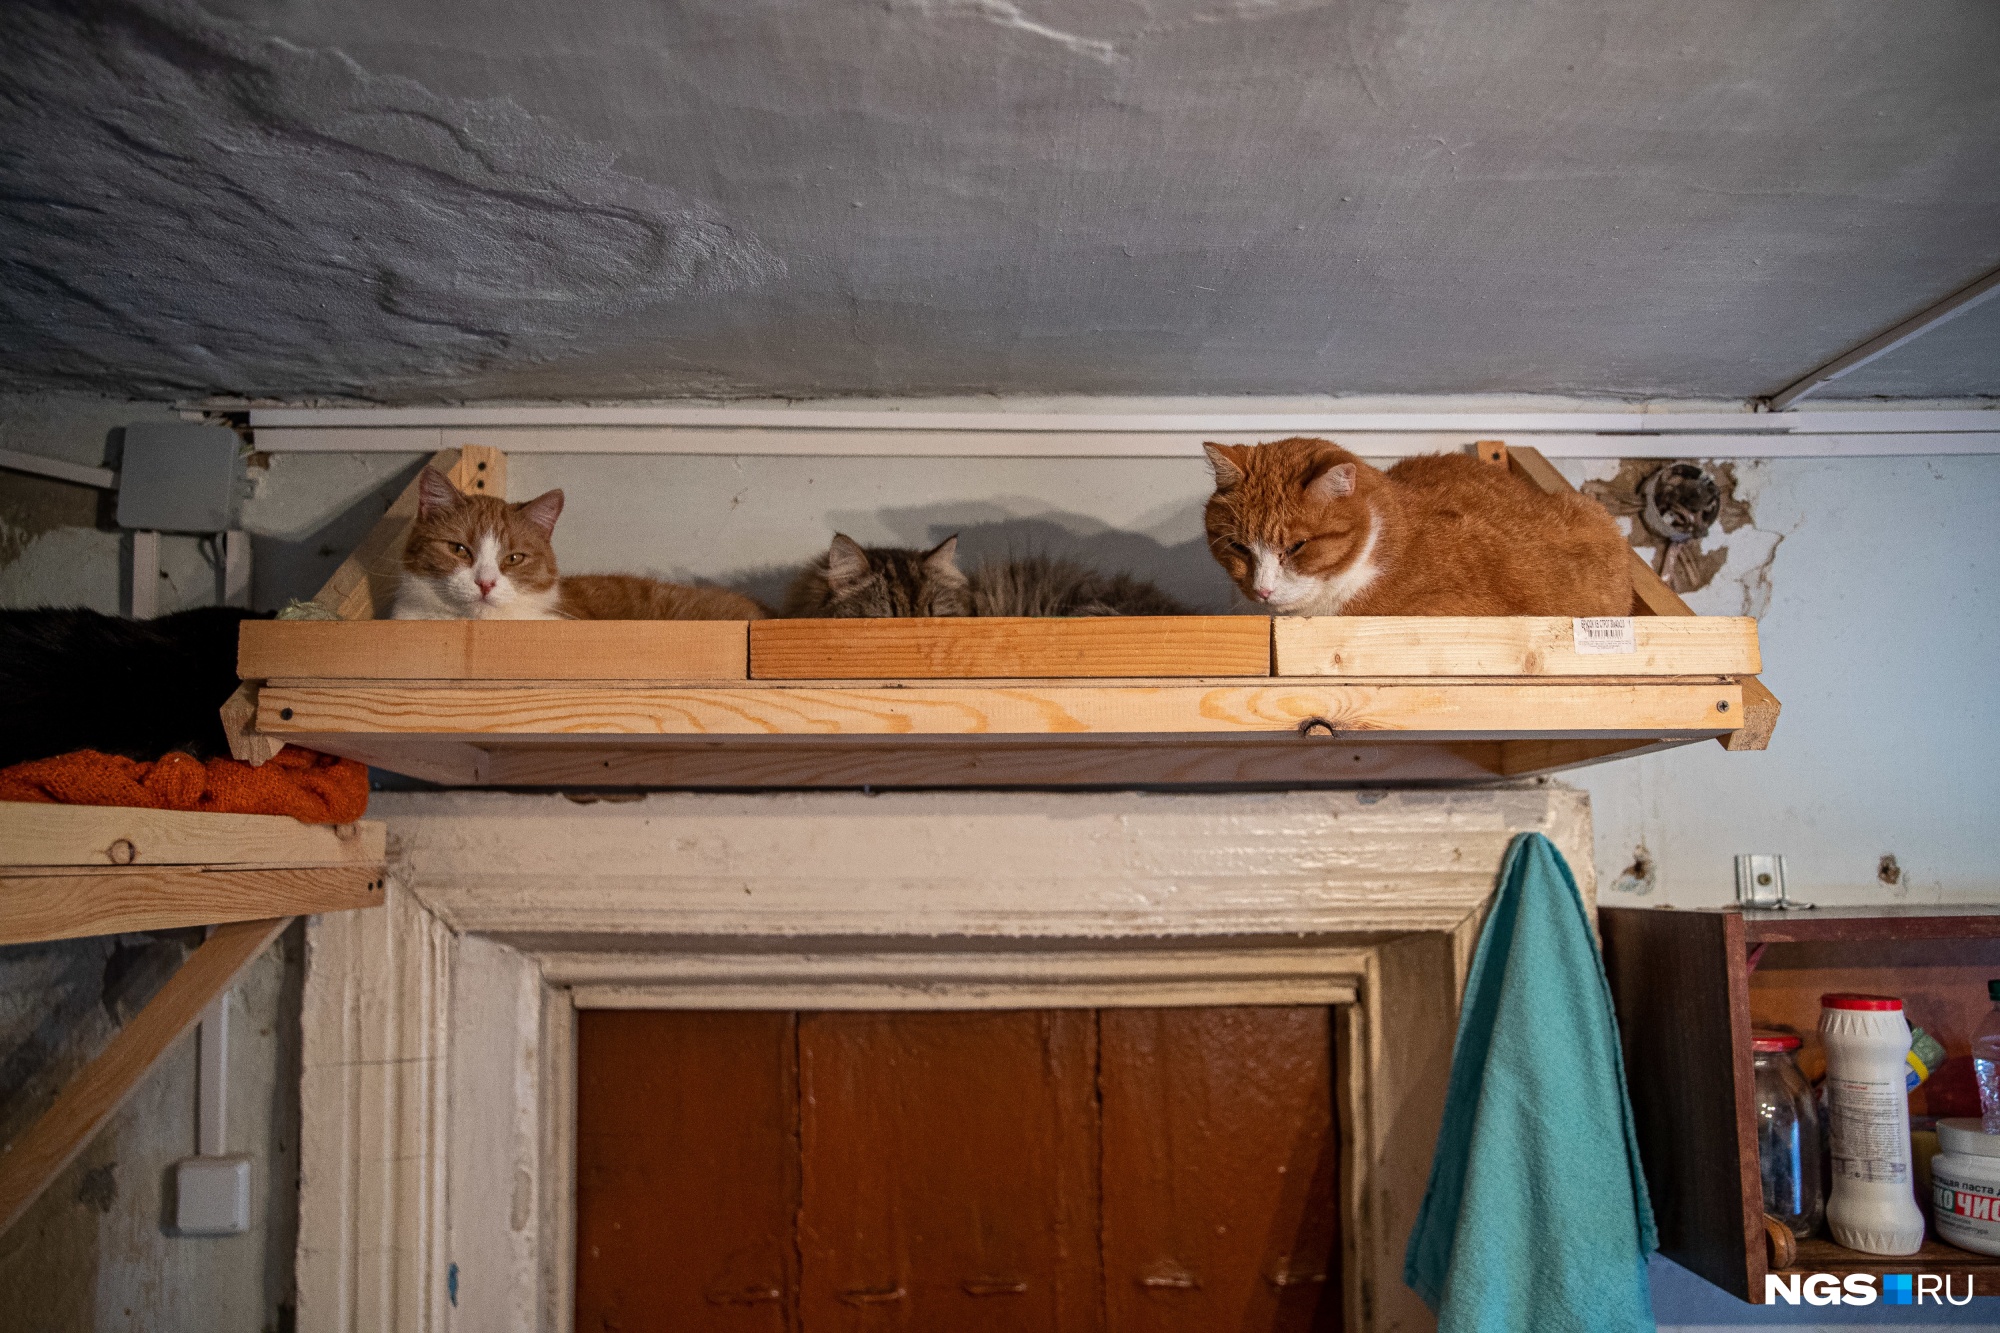 Под потолком сидят коты, которые раньше были уличными. Они ведут себя осторожно и спокойно наблюдают за происходящим